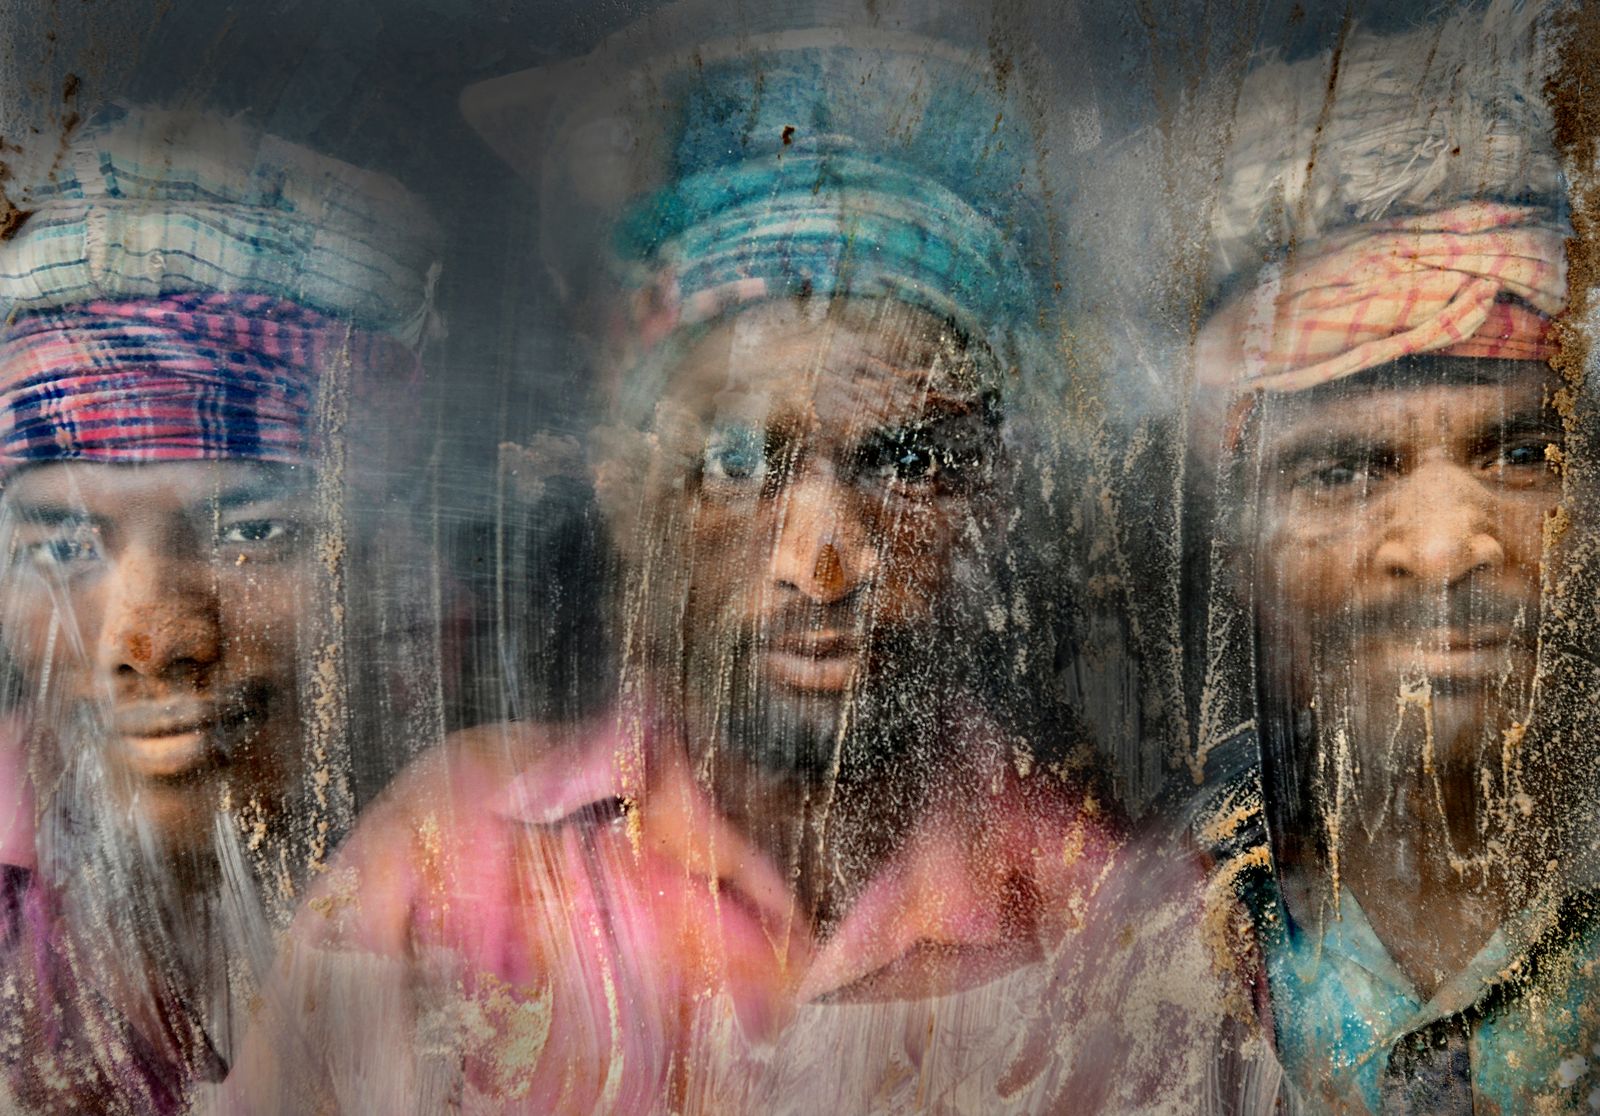  旅行人像，孟加拉国吉大港碎石场的工人，摄影师： Faisal Azim。 